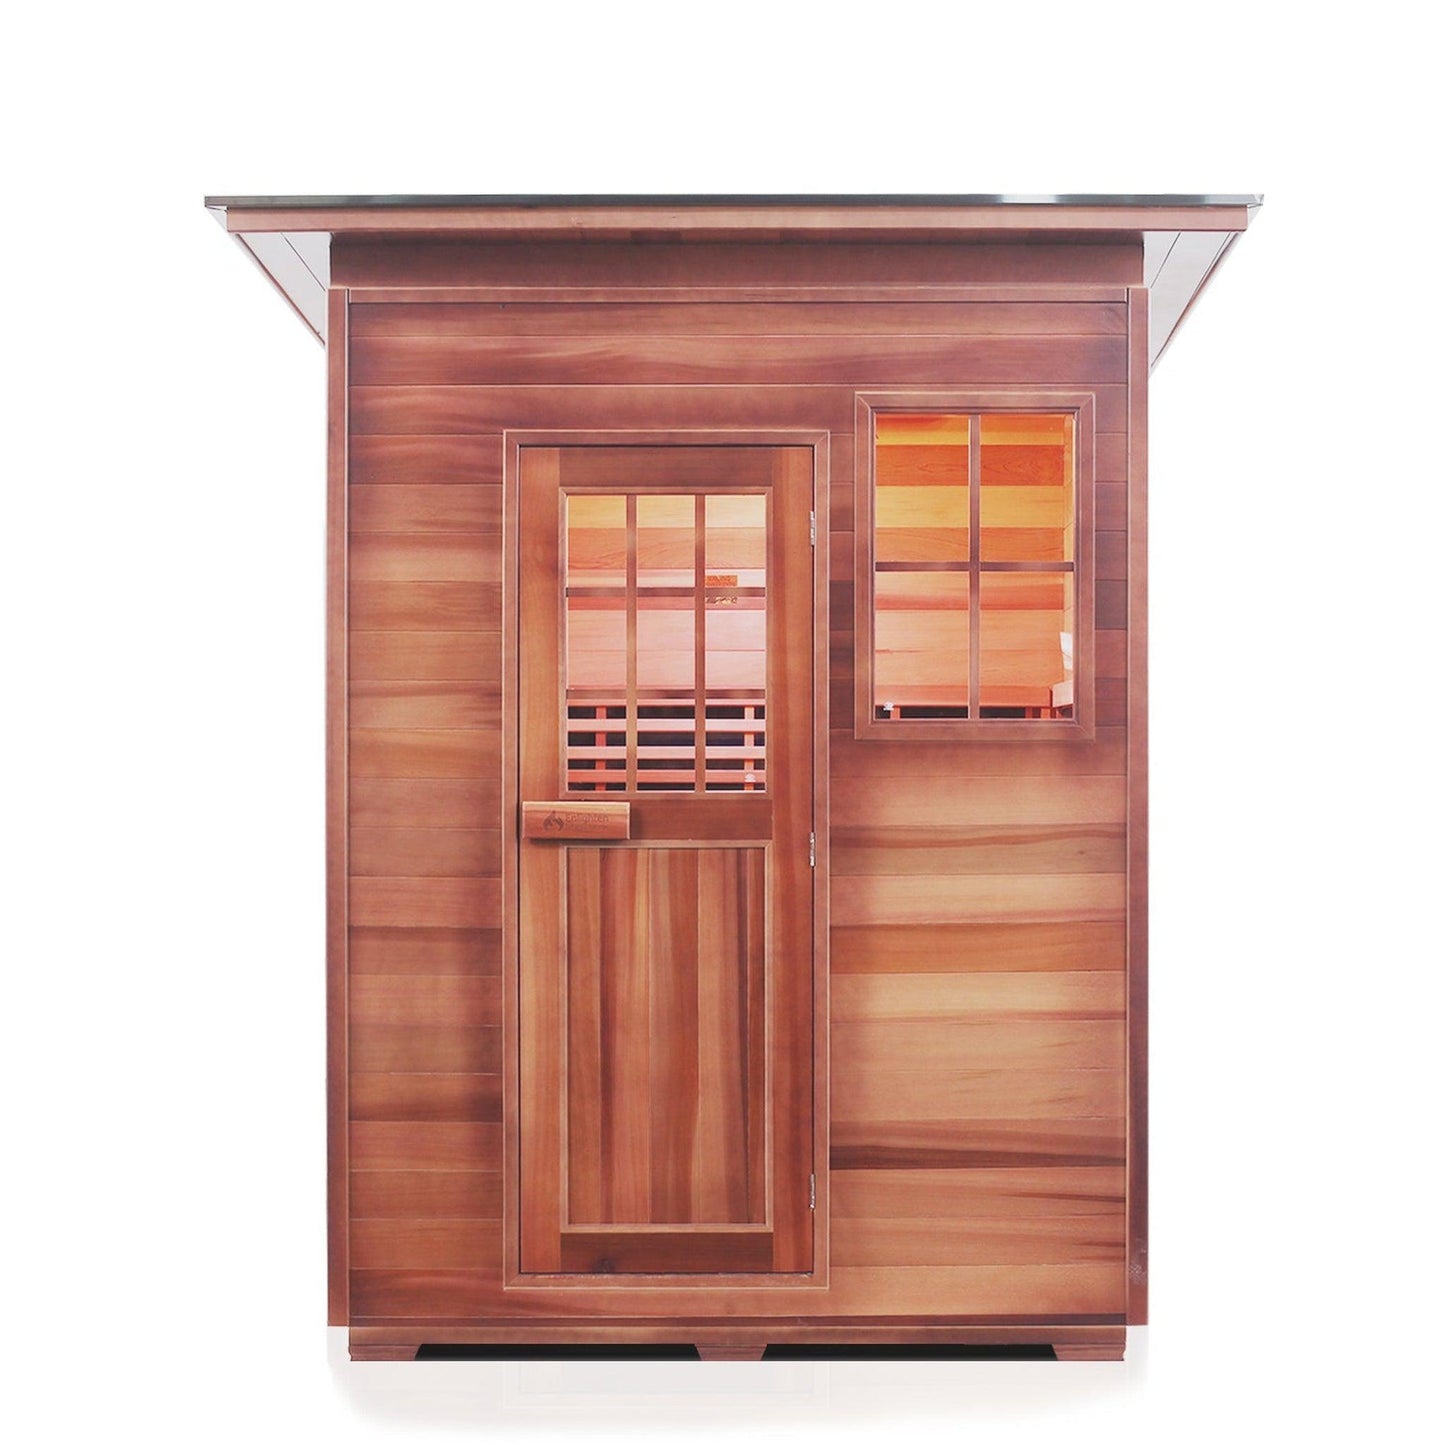 Enlighten InfraNature Original Sierra 3-Person Slope Roof Full Spectrum Infrared Outdoor Sauna